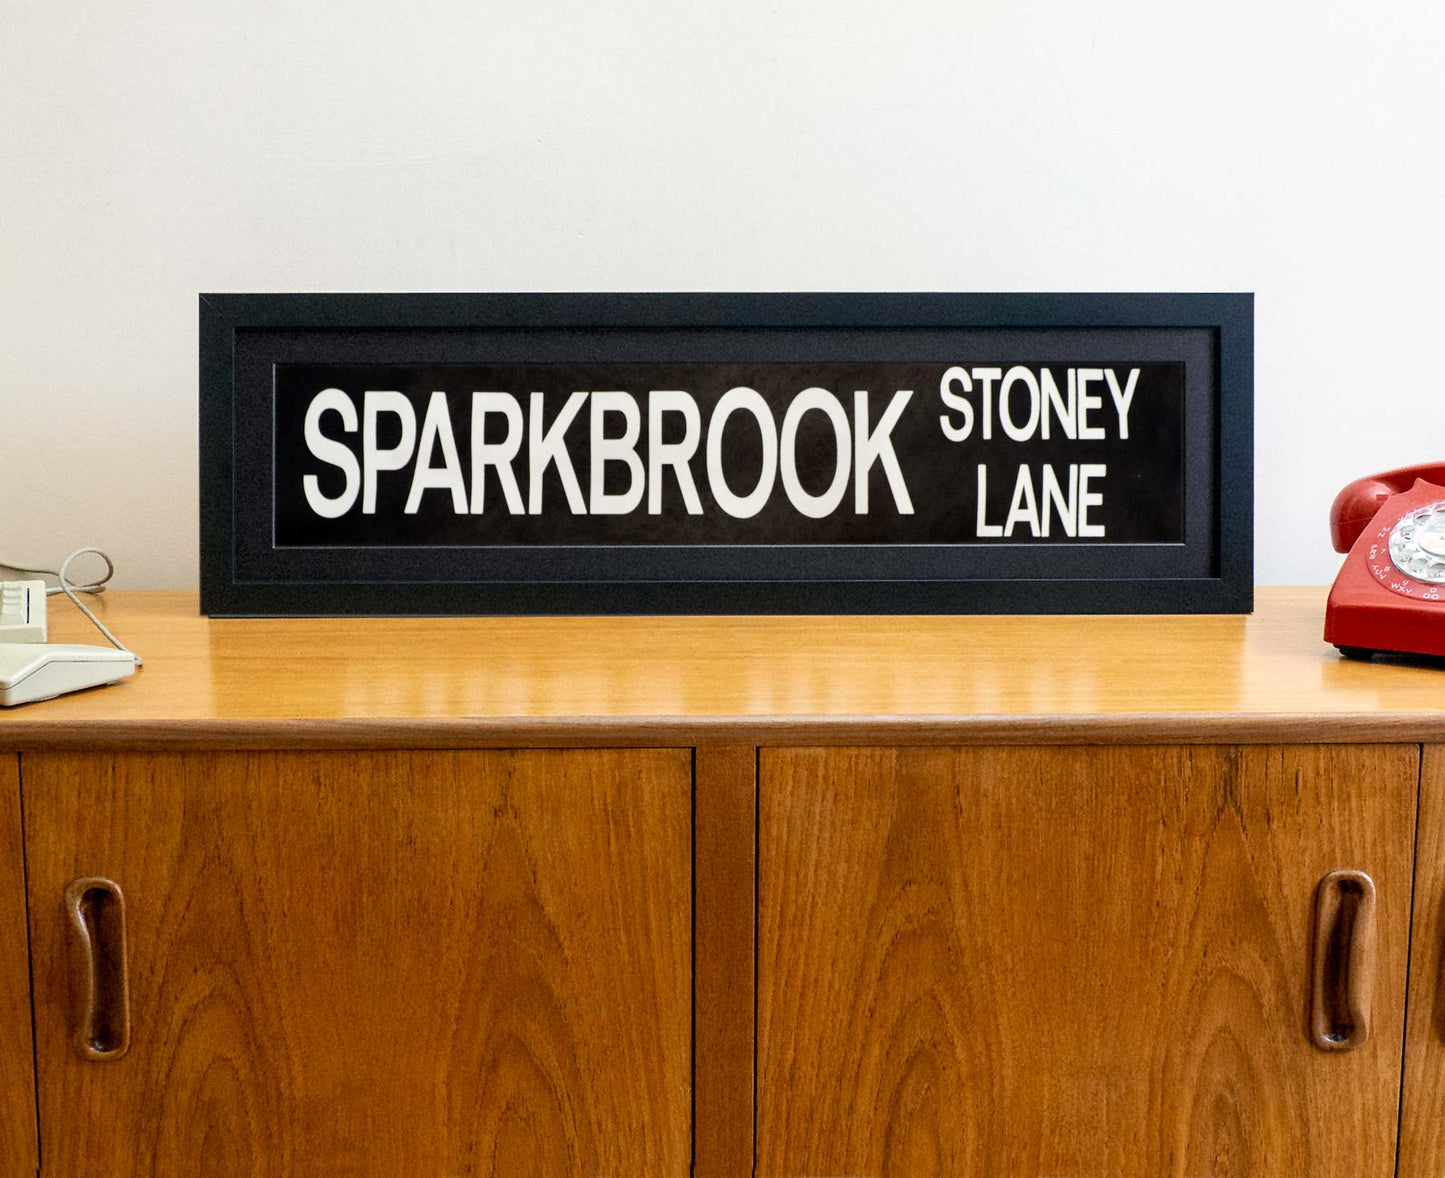 Sparkbrook Stoney Lane 1990s framed original bus blind